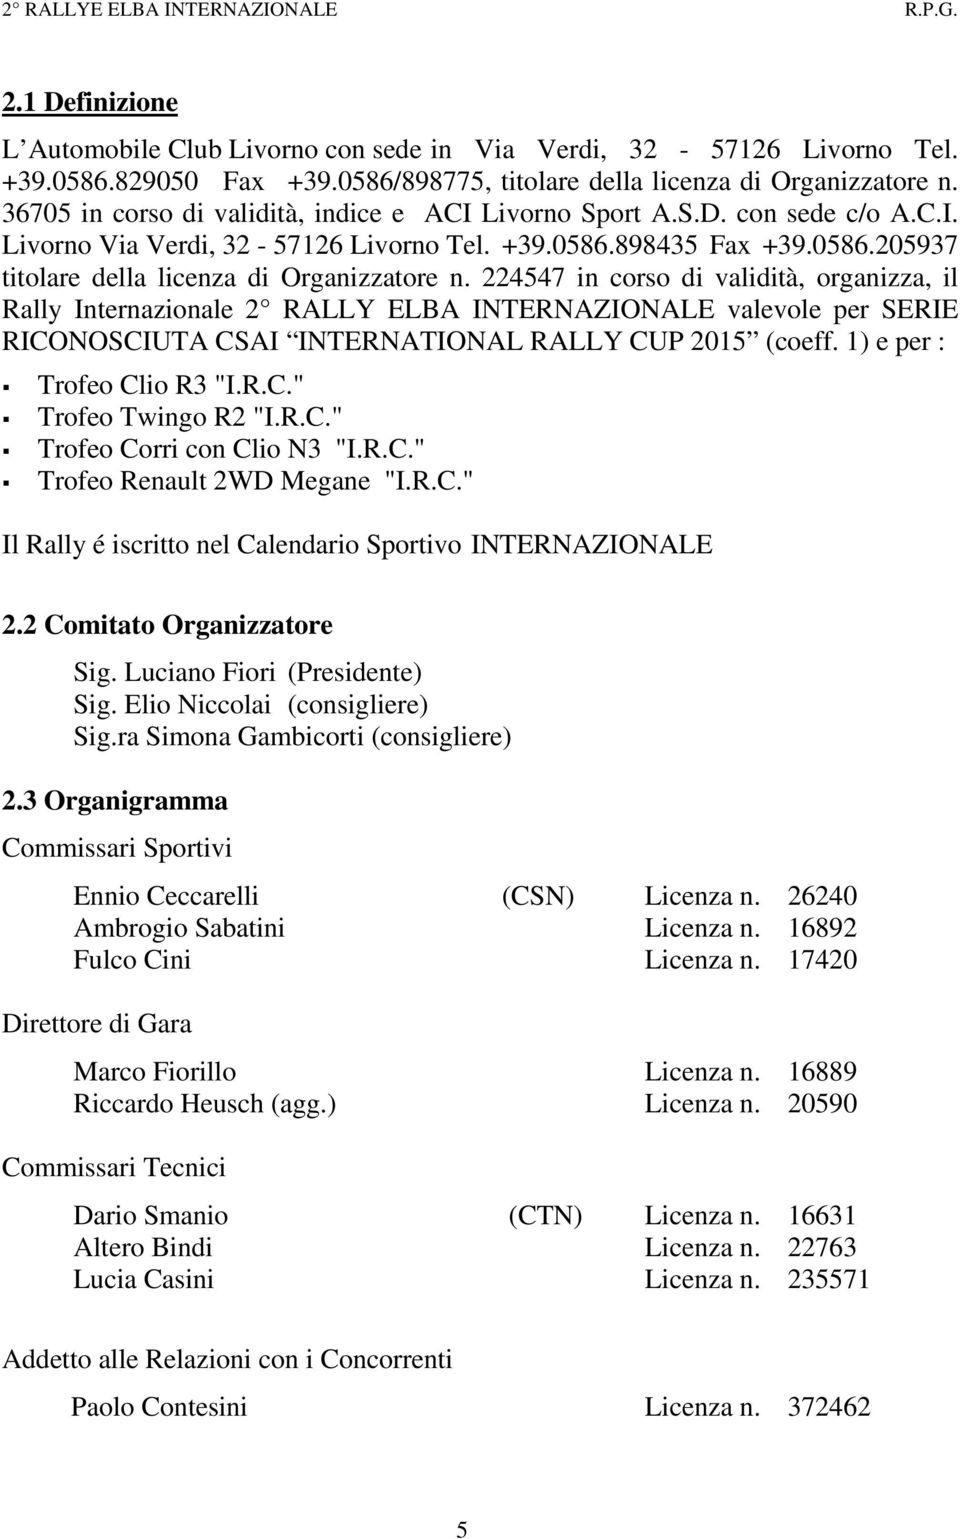 224547 in corso di validità, organizza, il Rally Internazionale 2 RALLY ELBA INTERNAZIONALE valevole per SERIE RICONOSCIUTA CSAI INTERNATIONAL RALLY CUP 2015 (coeff. 1) e per : Trofeo Clio R3 "I.R.C." Trofeo Twingo R2 "I.